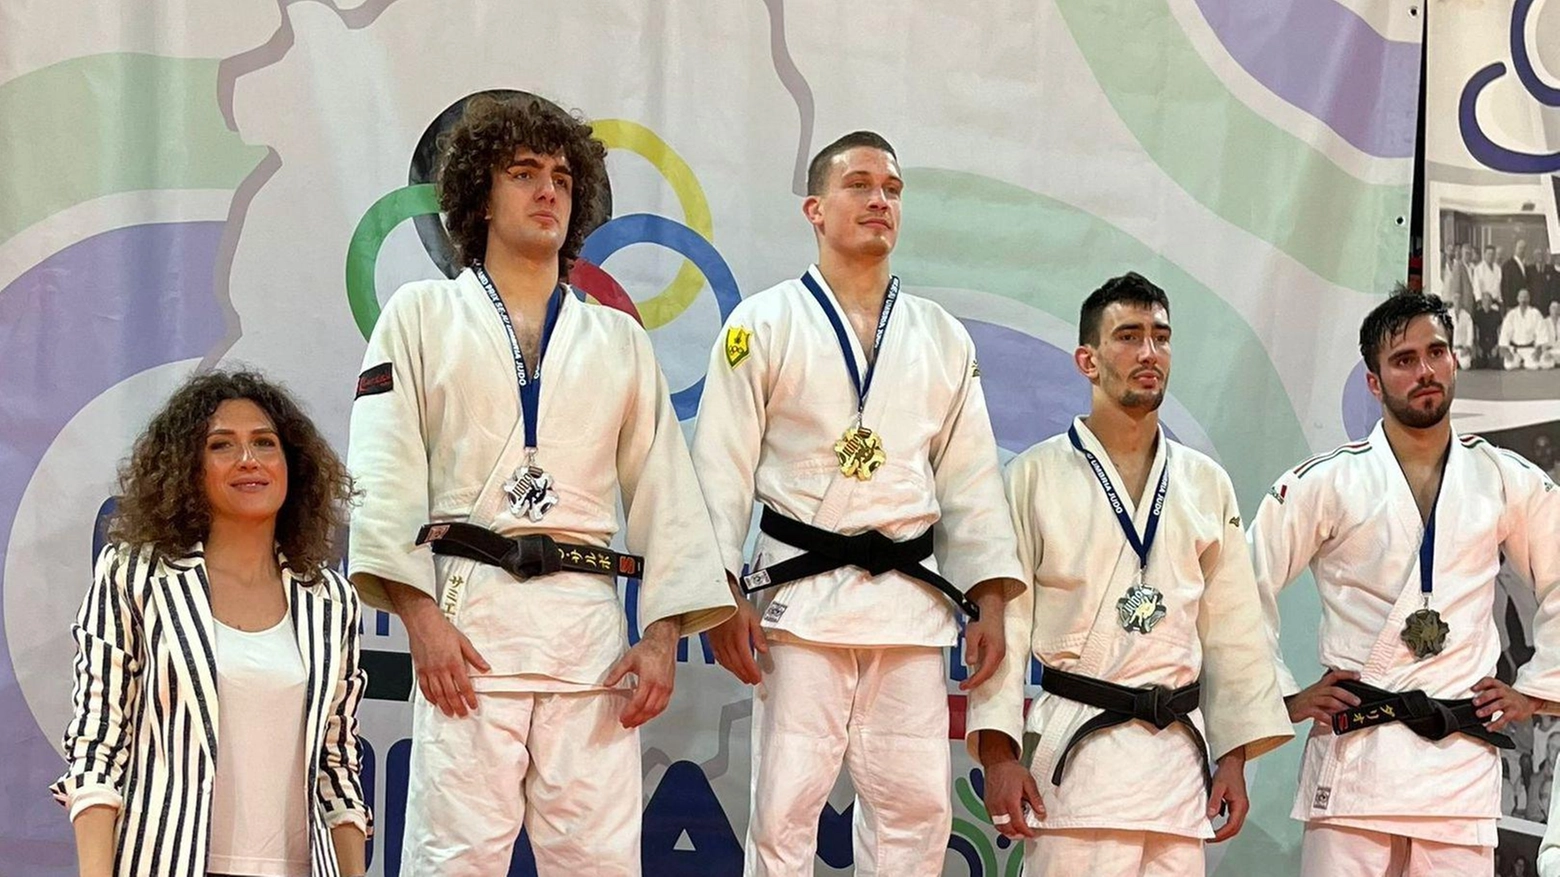 Grand prix di judo  Trecento atleti  a caccia dell’alloro